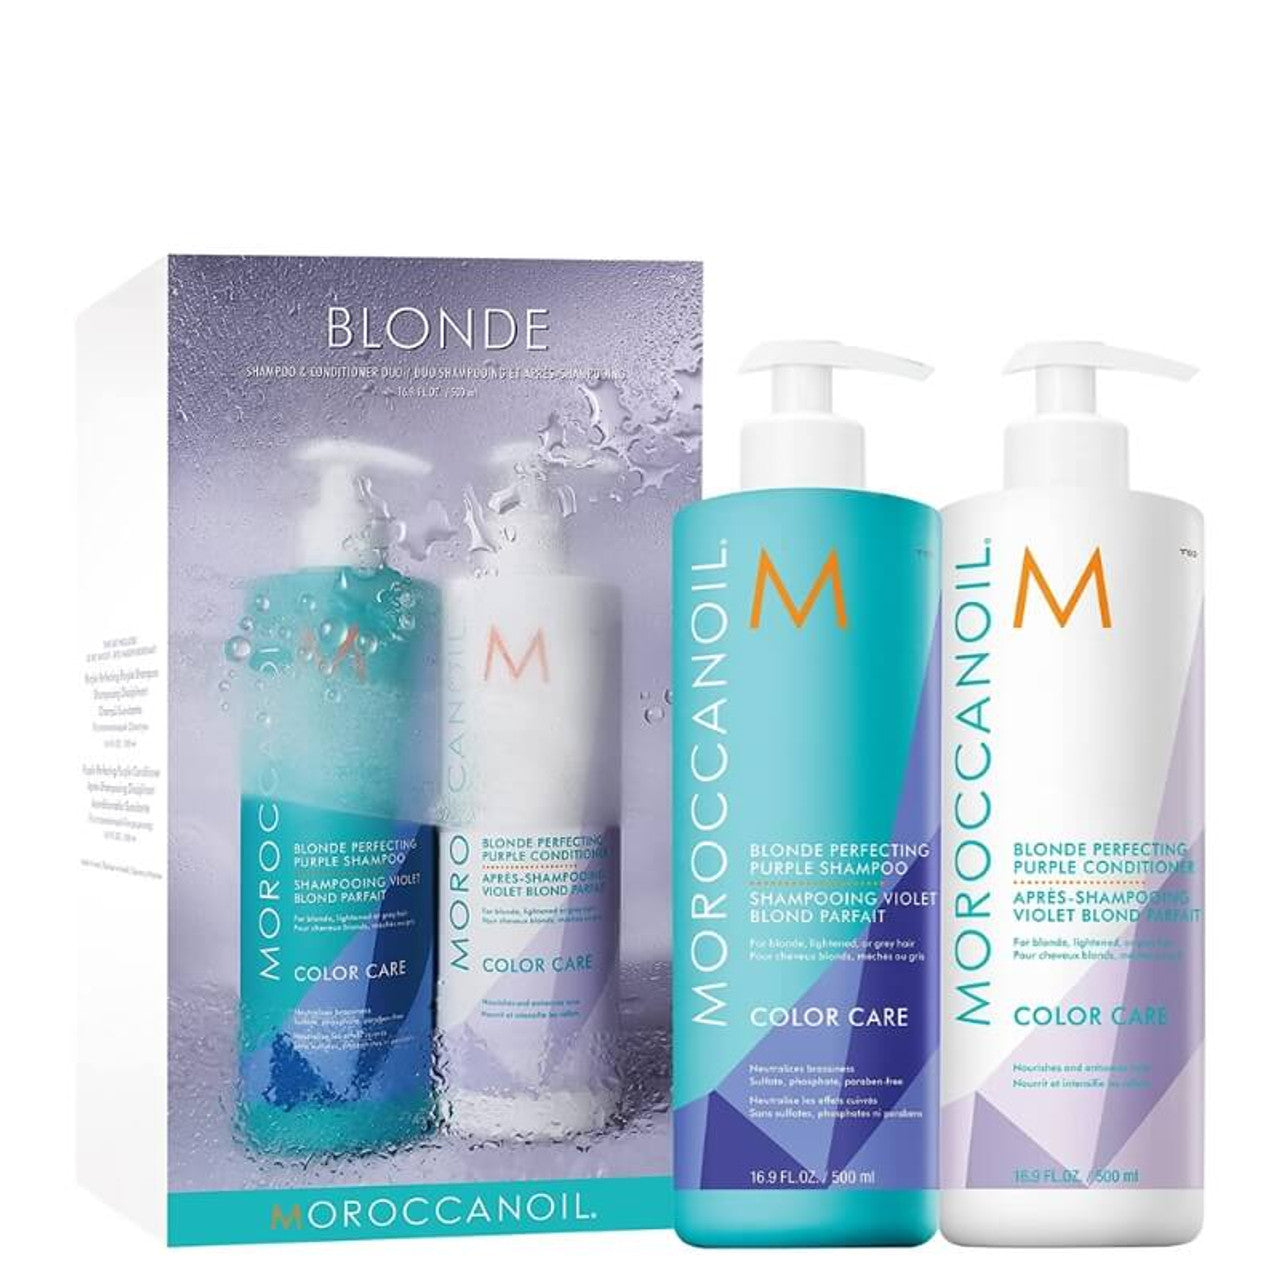 Morroccanoil Purple Shampoo and Conditoner Duo 500ml